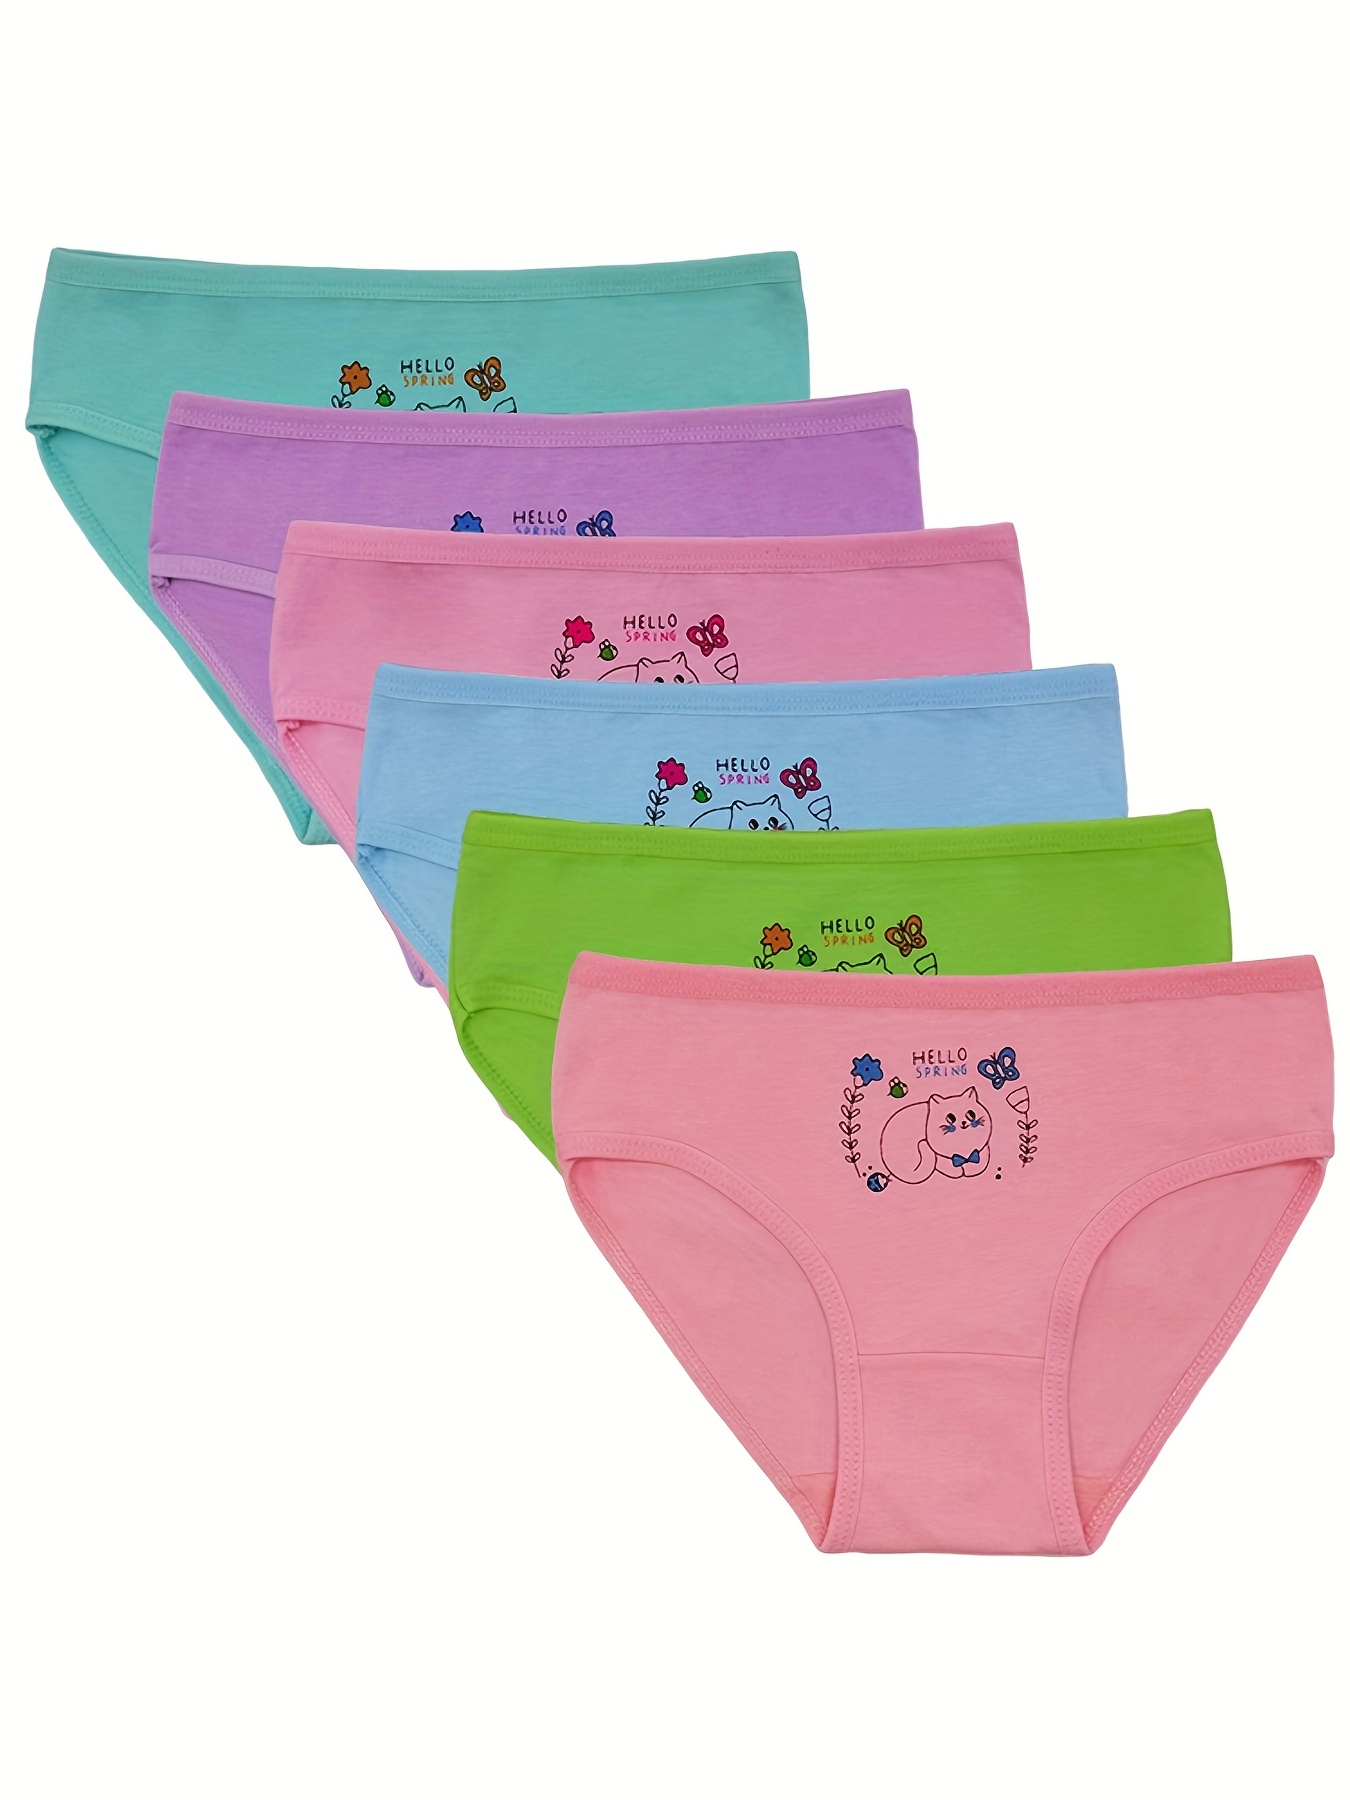 Cartoon Cute Girls Triangle Kawaii Panties Set Of Pcs All Cotton Knickers  Briefs For Children From Ligemeitang, $9.57